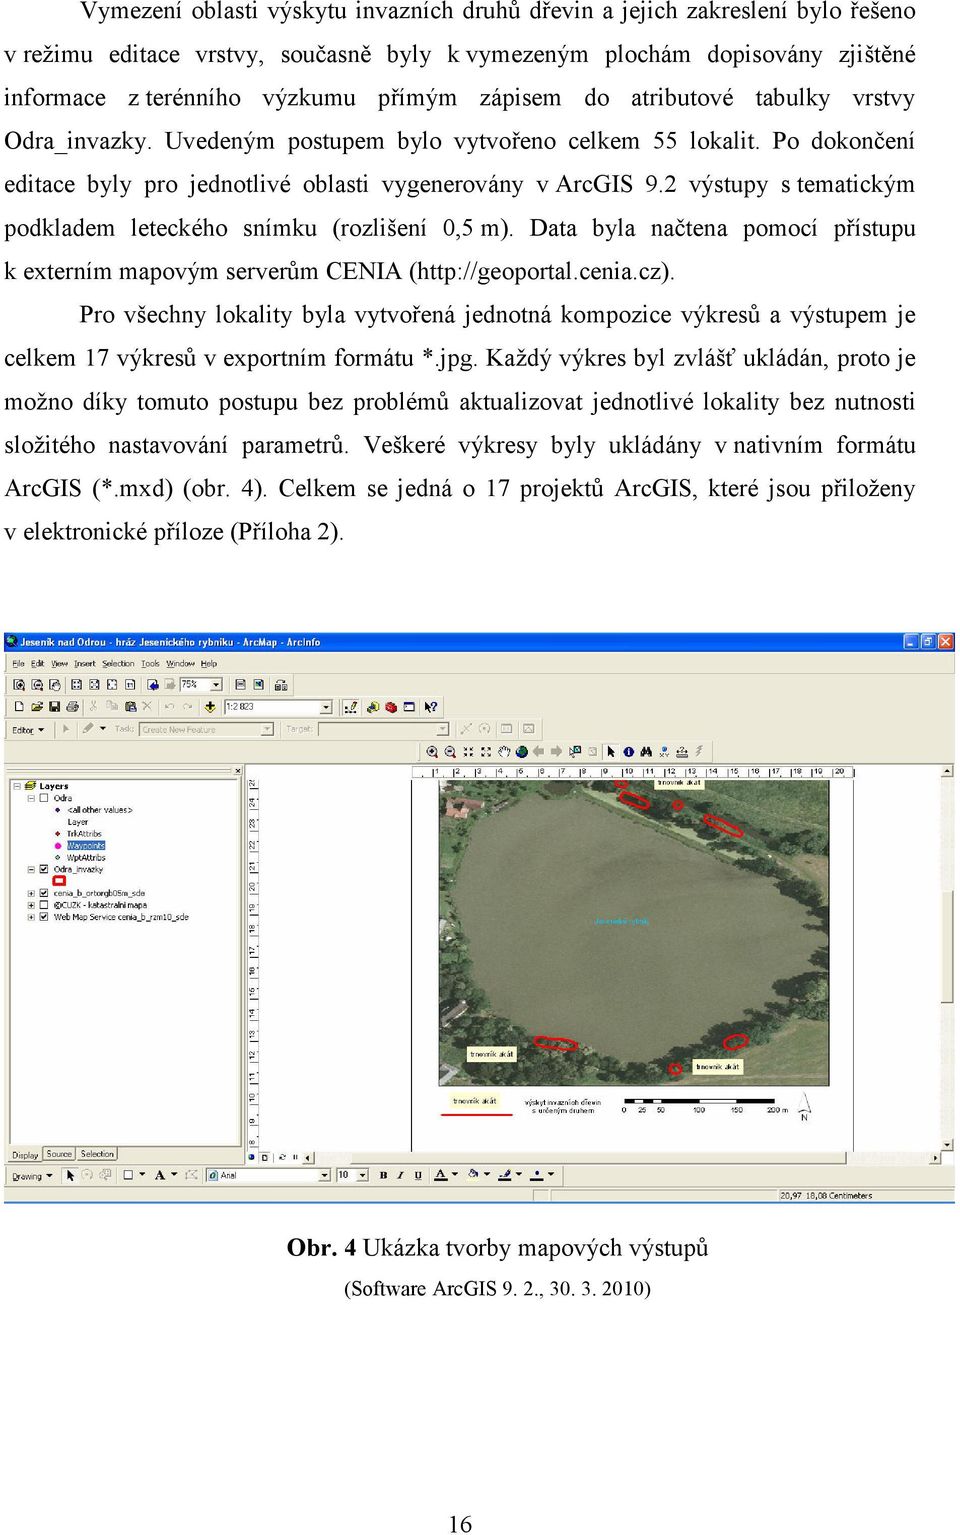 2 výstupy s tematickým podkladem leteckého snímku (rozlišení 0,5 m). Data byla načtena pomocí přístupu k externím mapovým serverům CENIA (http://geoportal.cenia.cz).